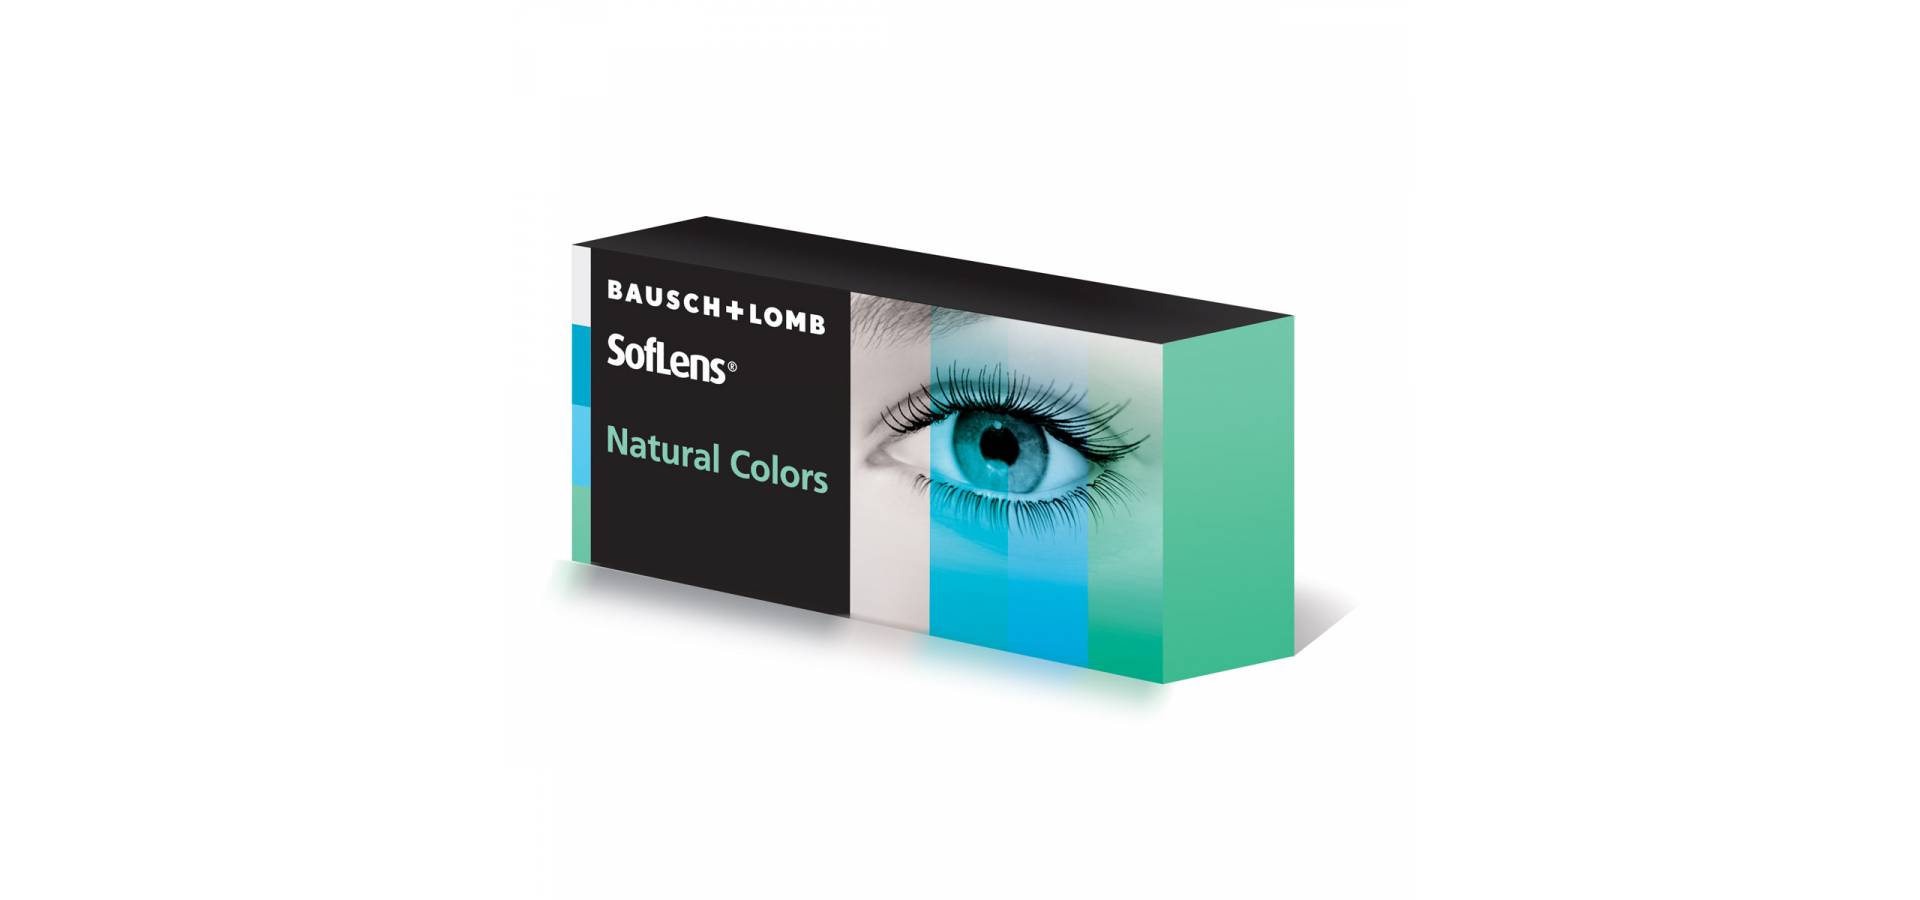 Kontaktne leće Bausch + Lomb SofLens Natural Colors: Vrsta: leće u boji